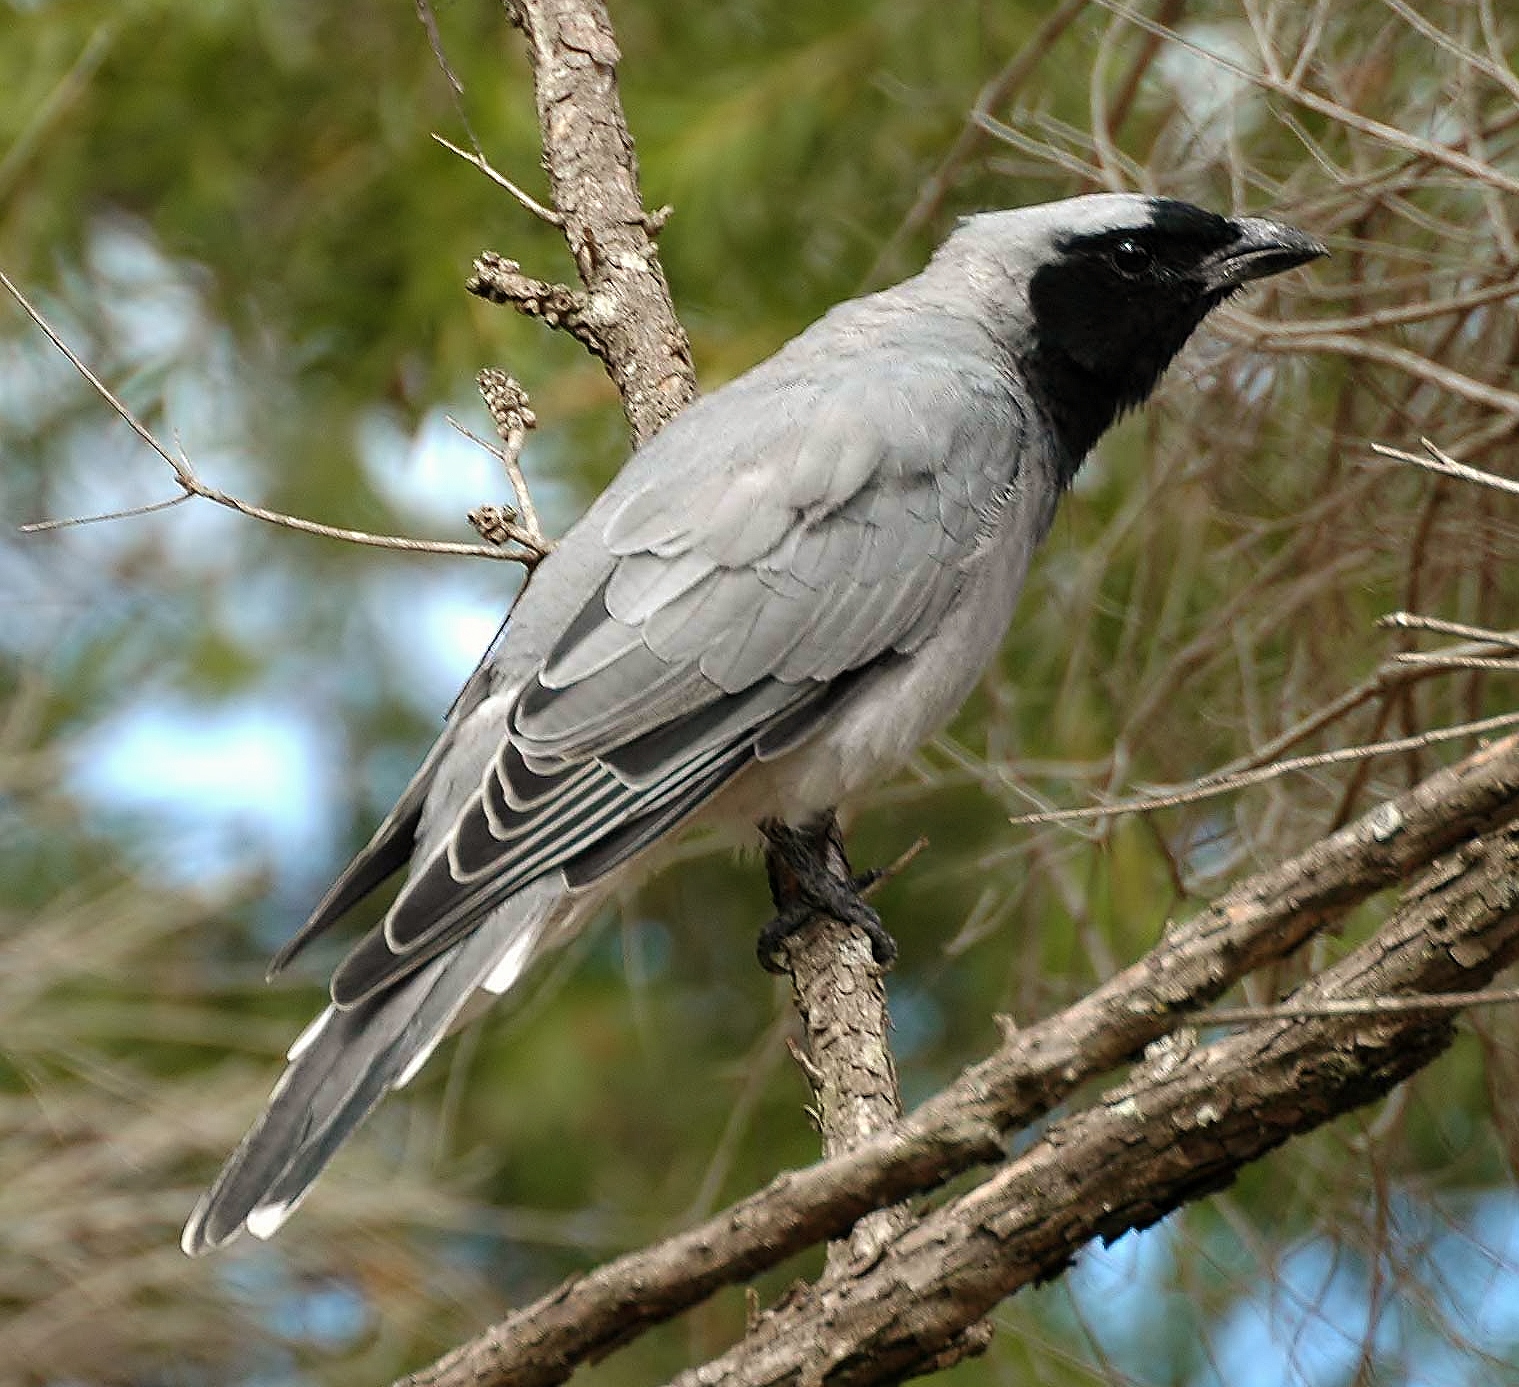 Black-faced cuckoo-shrike